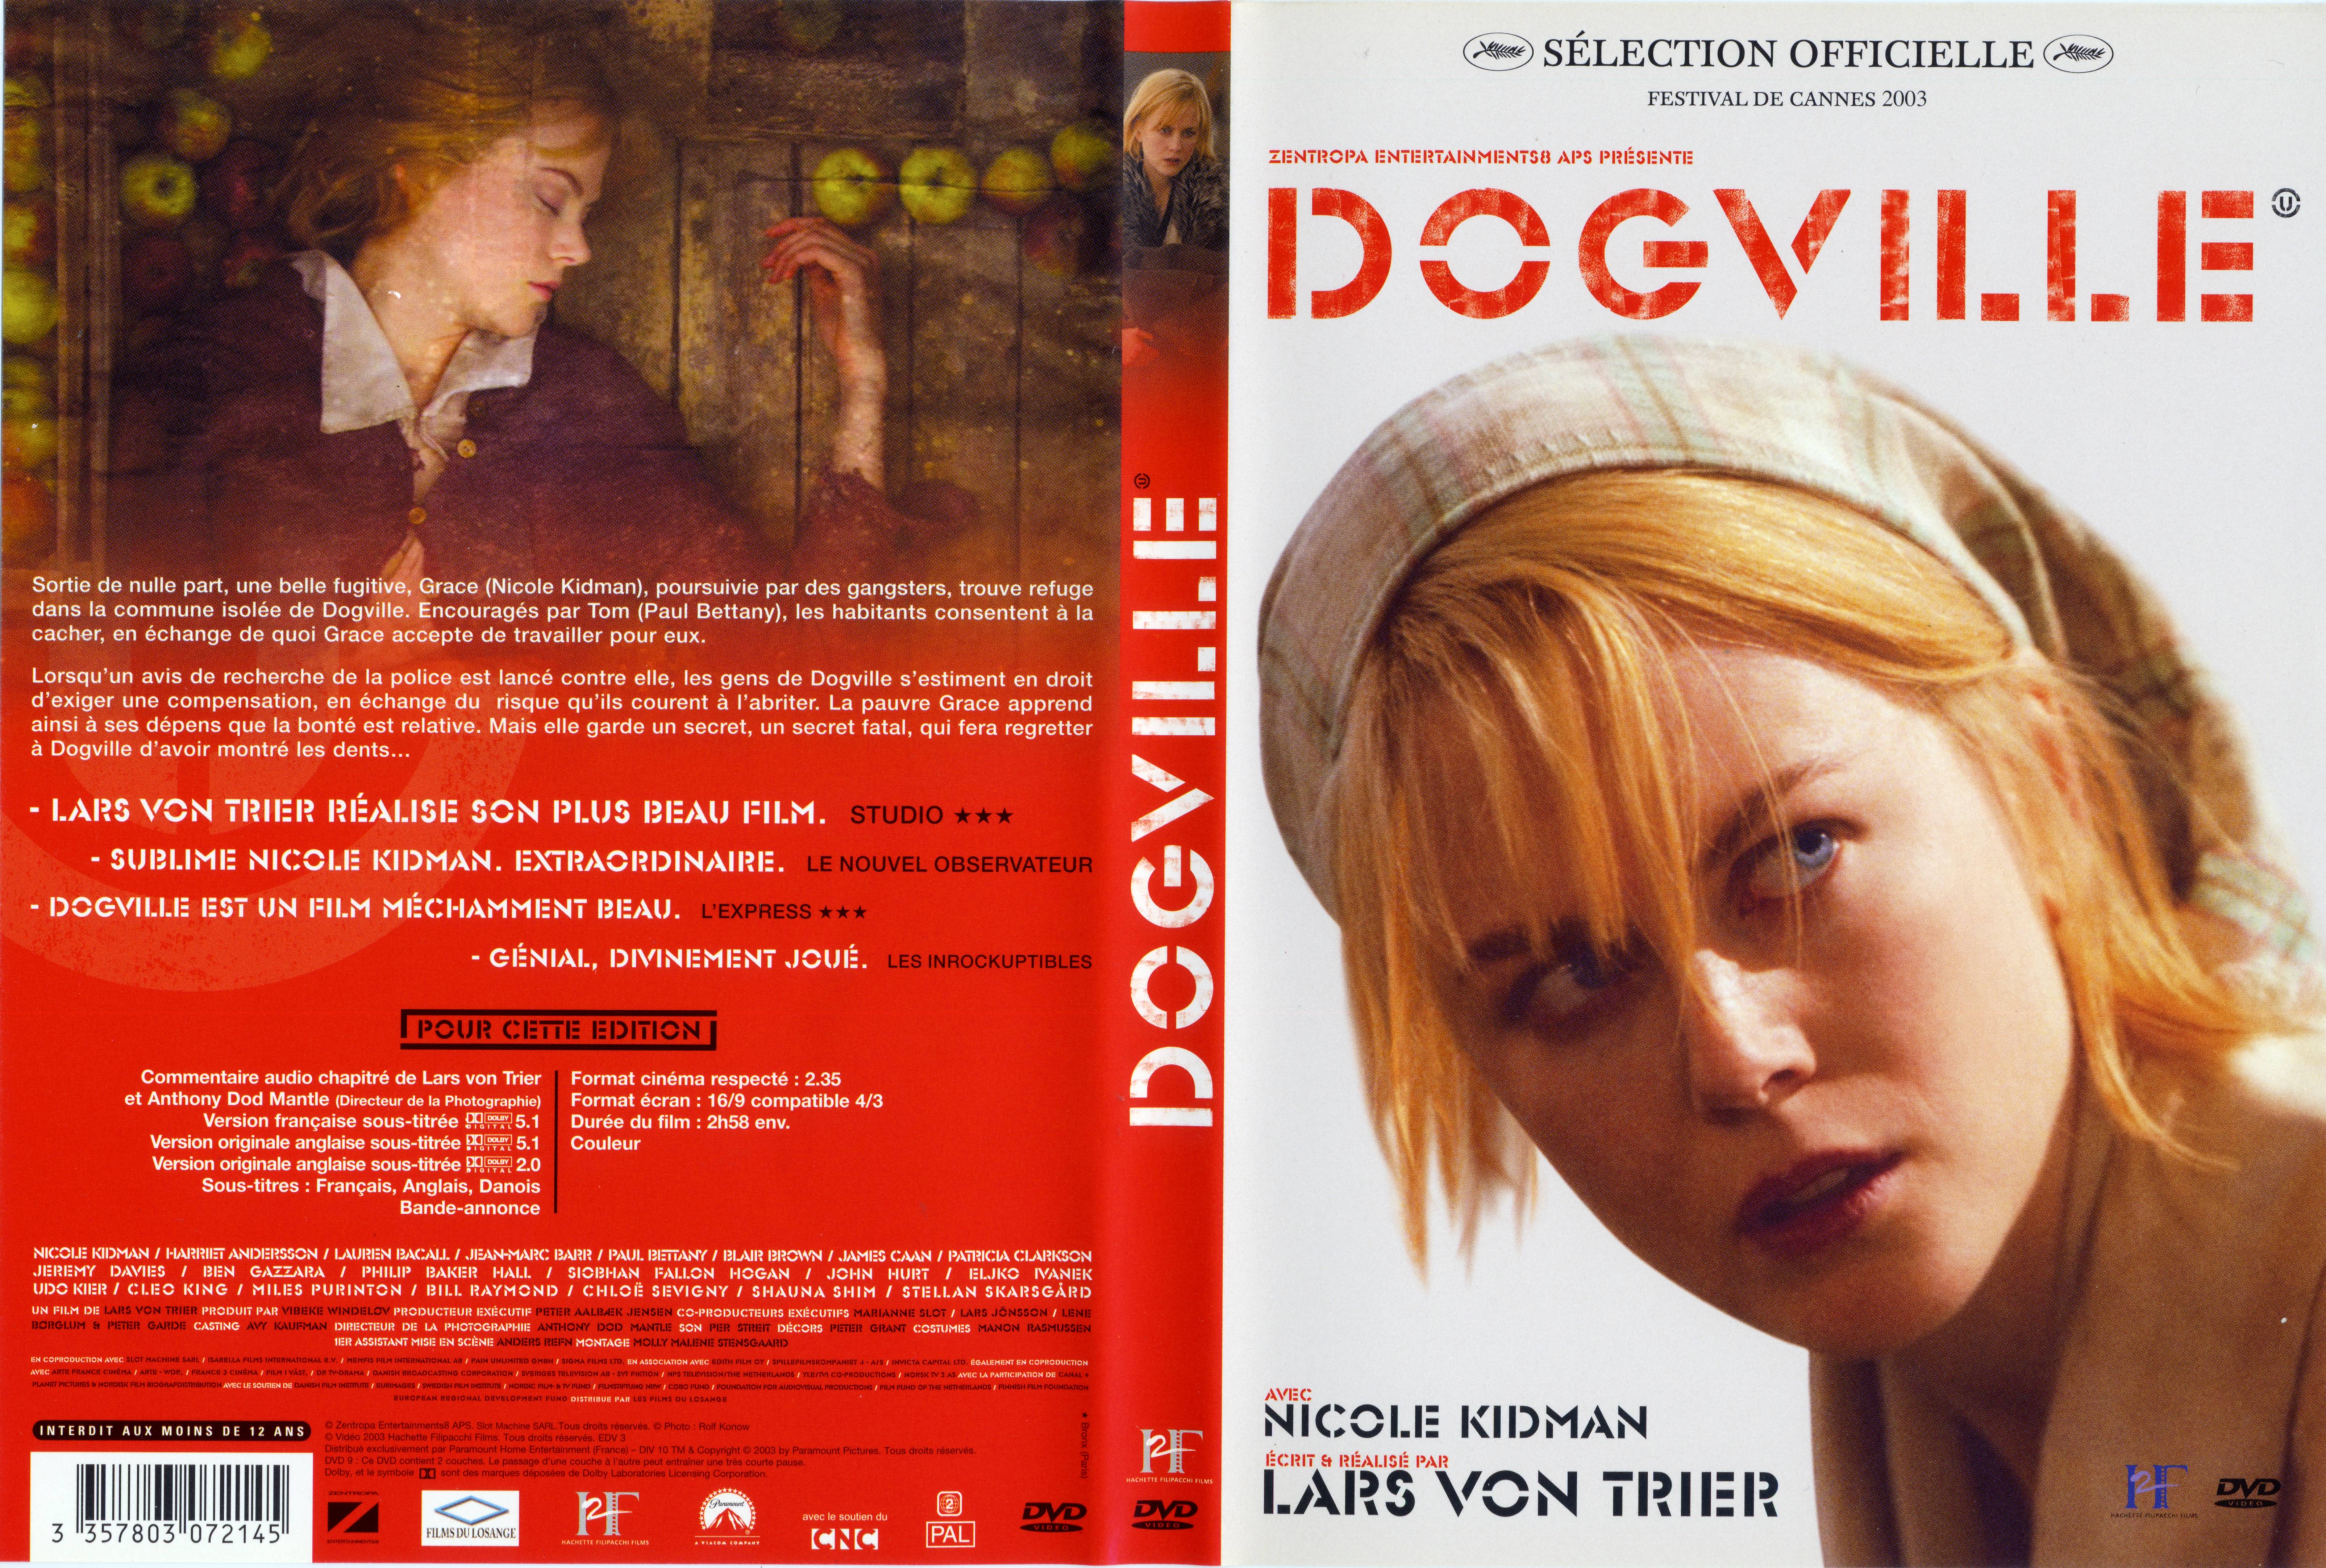 Jaquette DVD Dogville v2